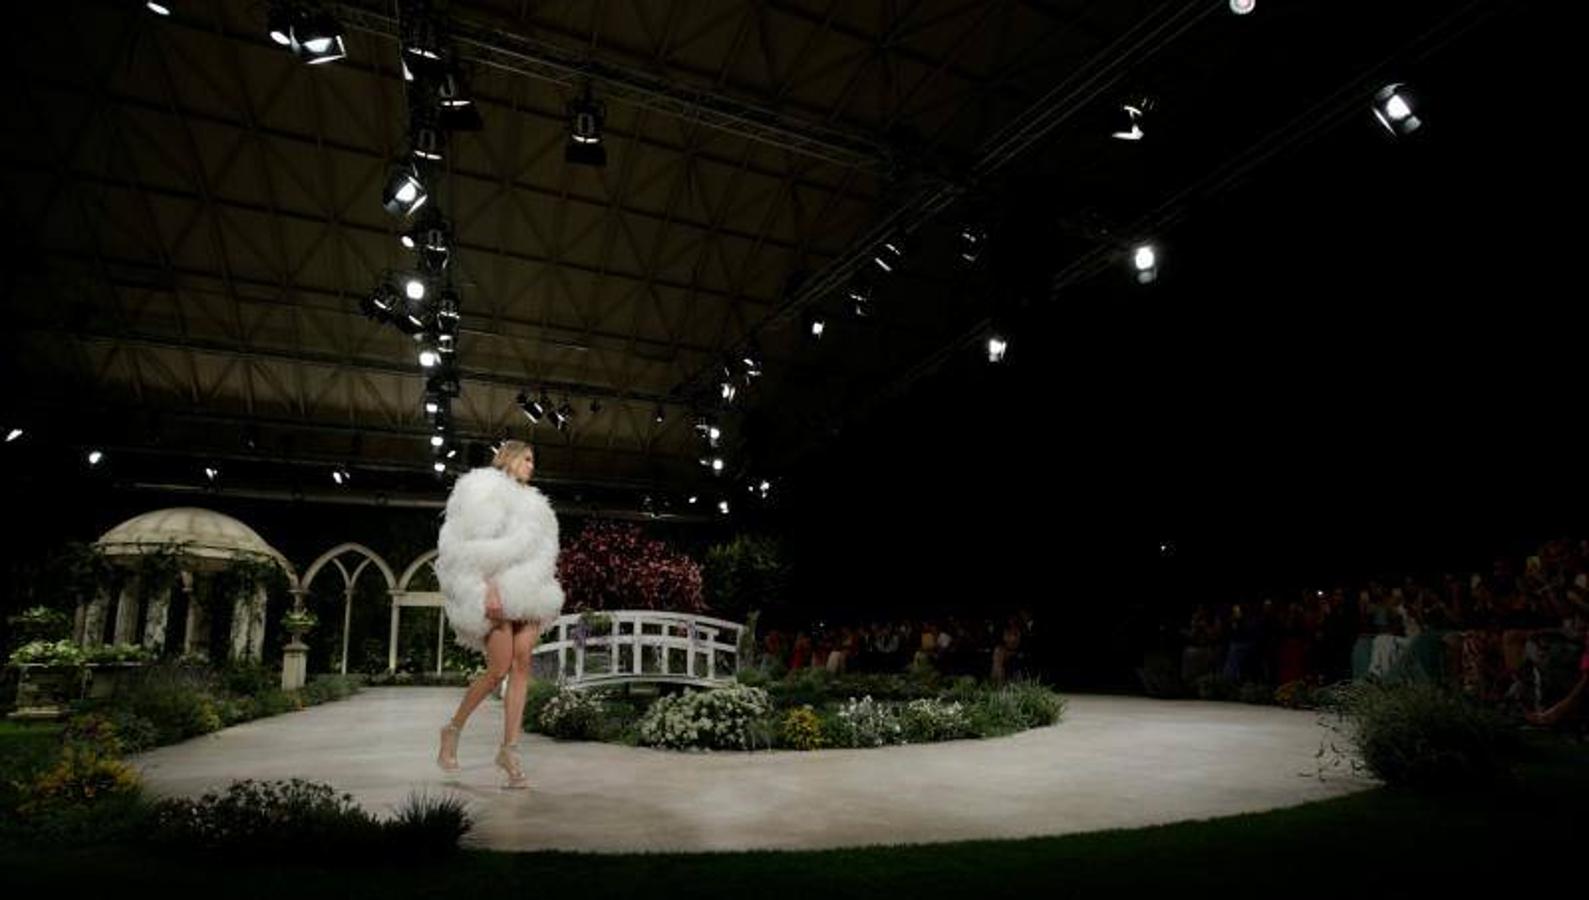 Ponovias ha sido la encragada de inaugurar la Barcelona Bridal Fashion Week en el Pabellón Italiano de Montjuïc con sus nuevas propuestas de su colección Atelier 2019, inspirada en el florecimiento de los grandes momentos, en una cita que contará con más de 1.500 invitados.